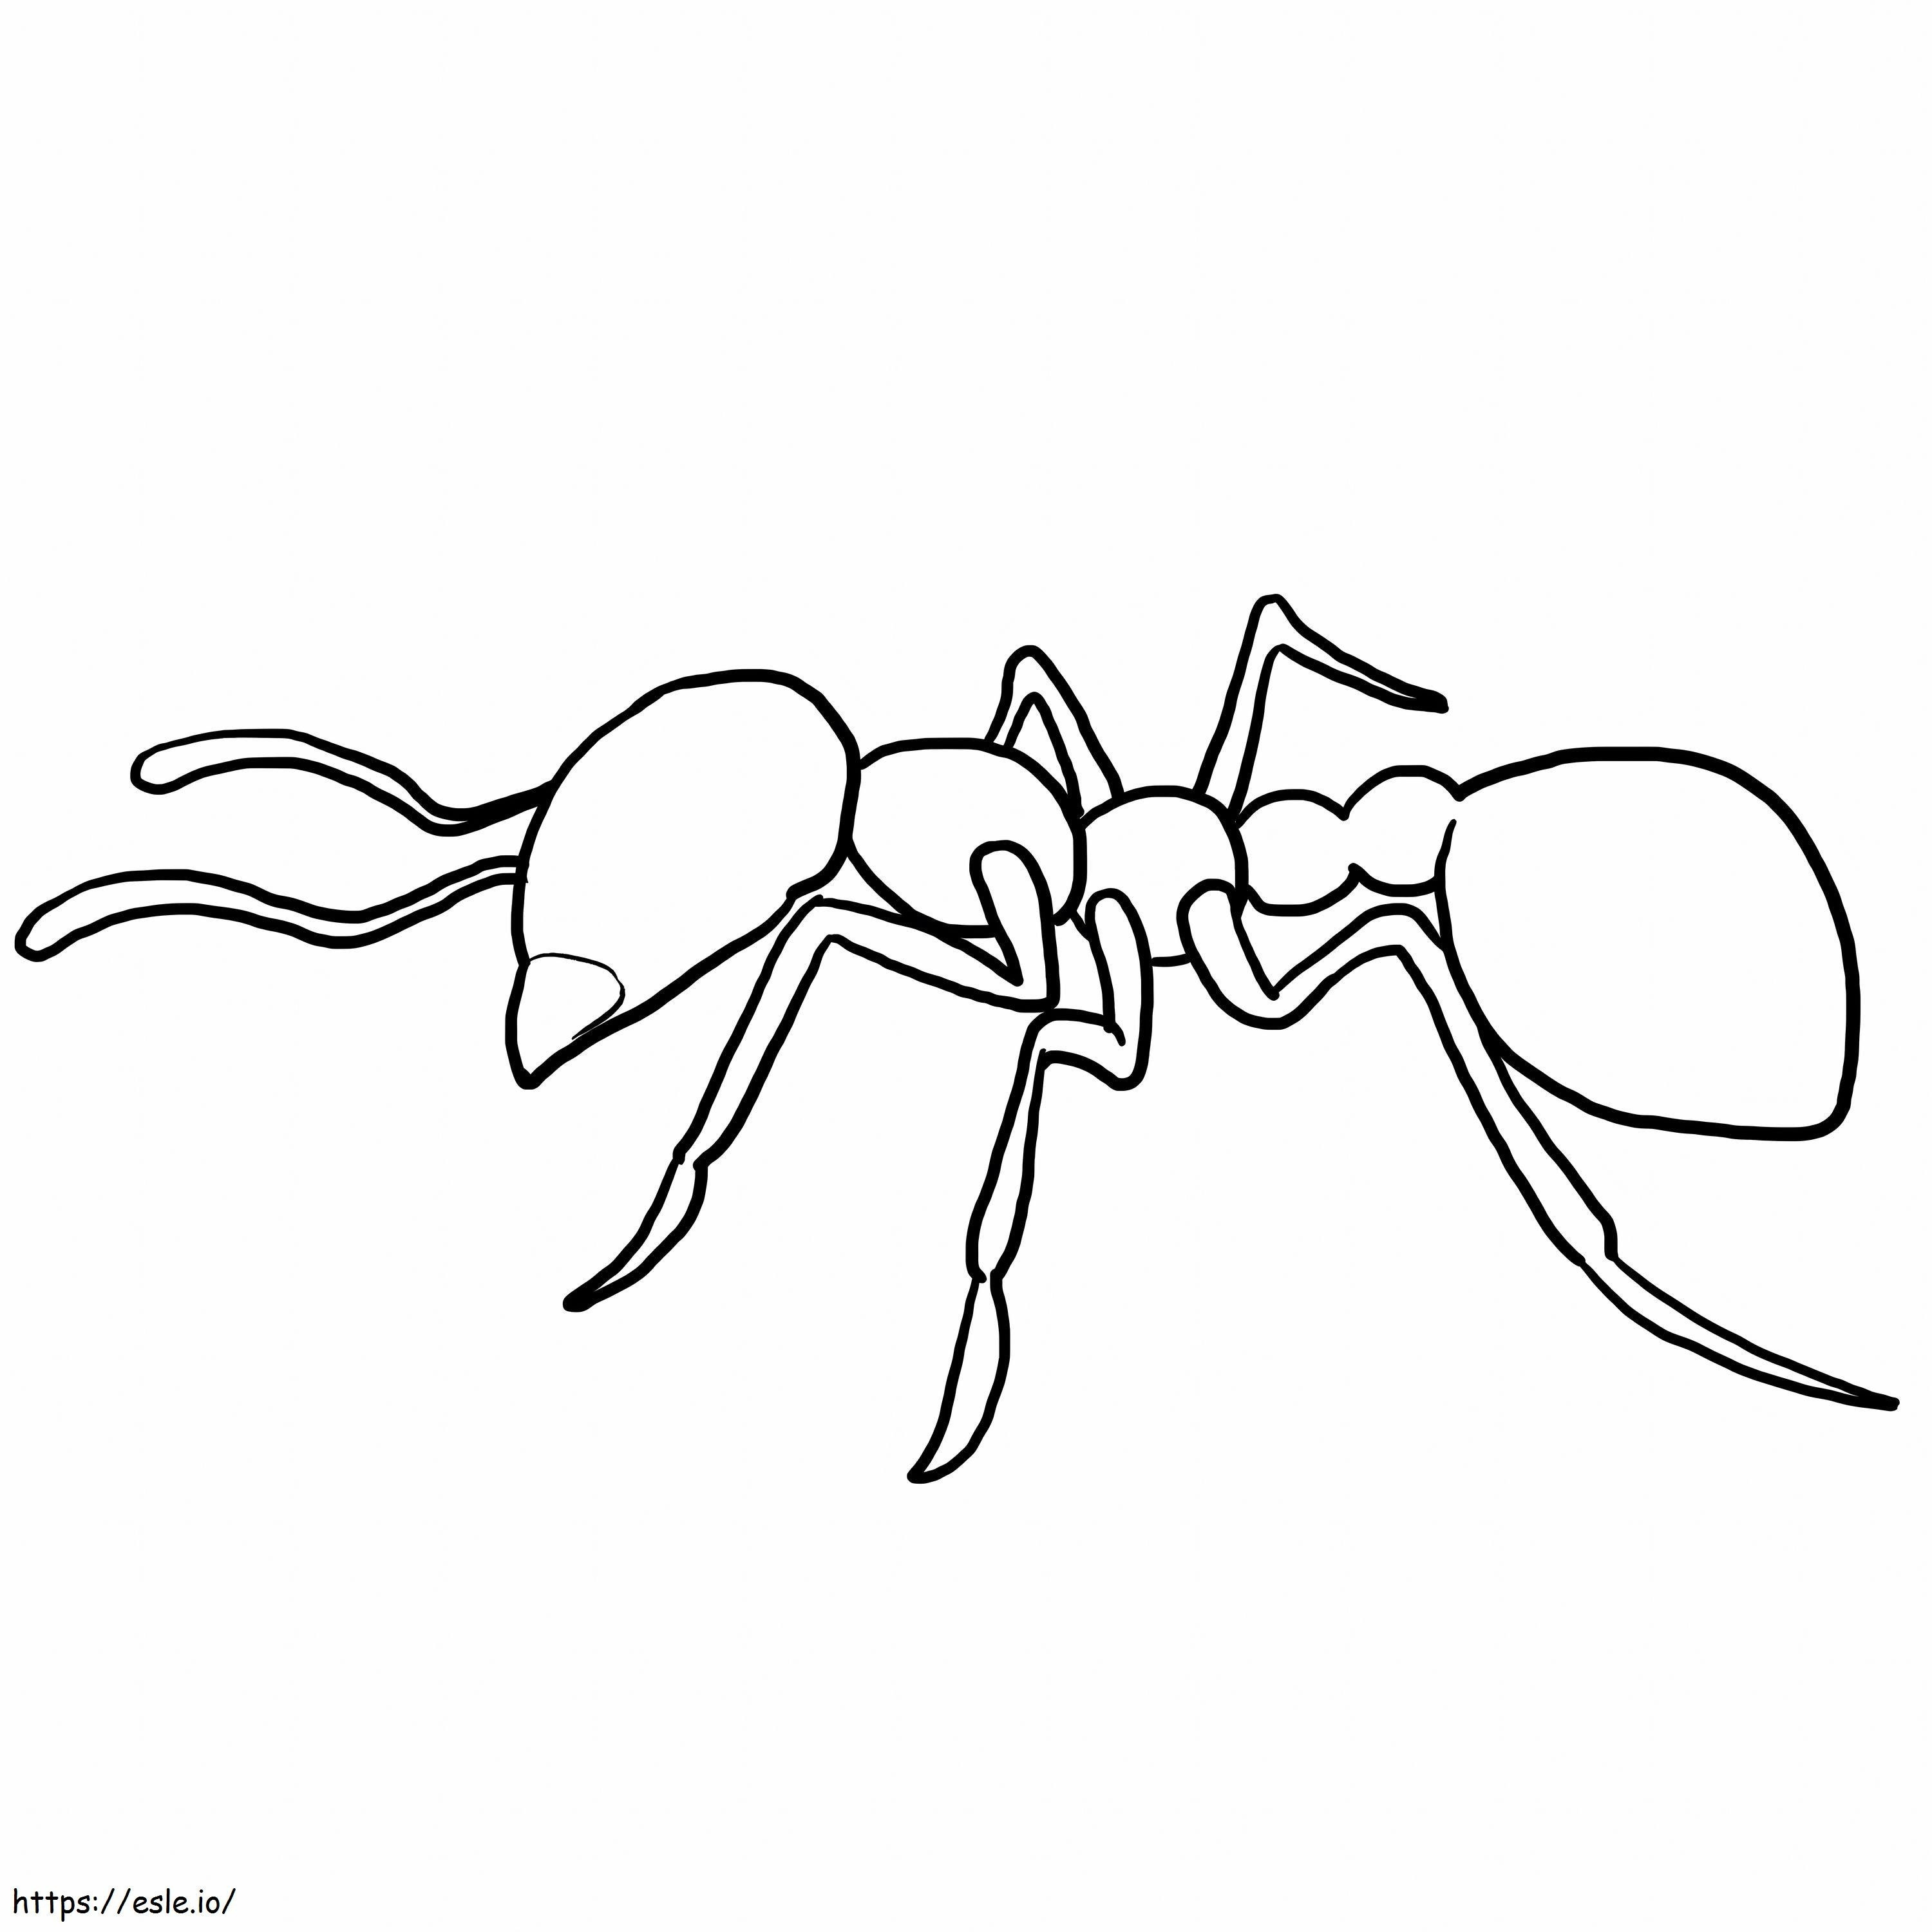 Karınca Anahattı boyama